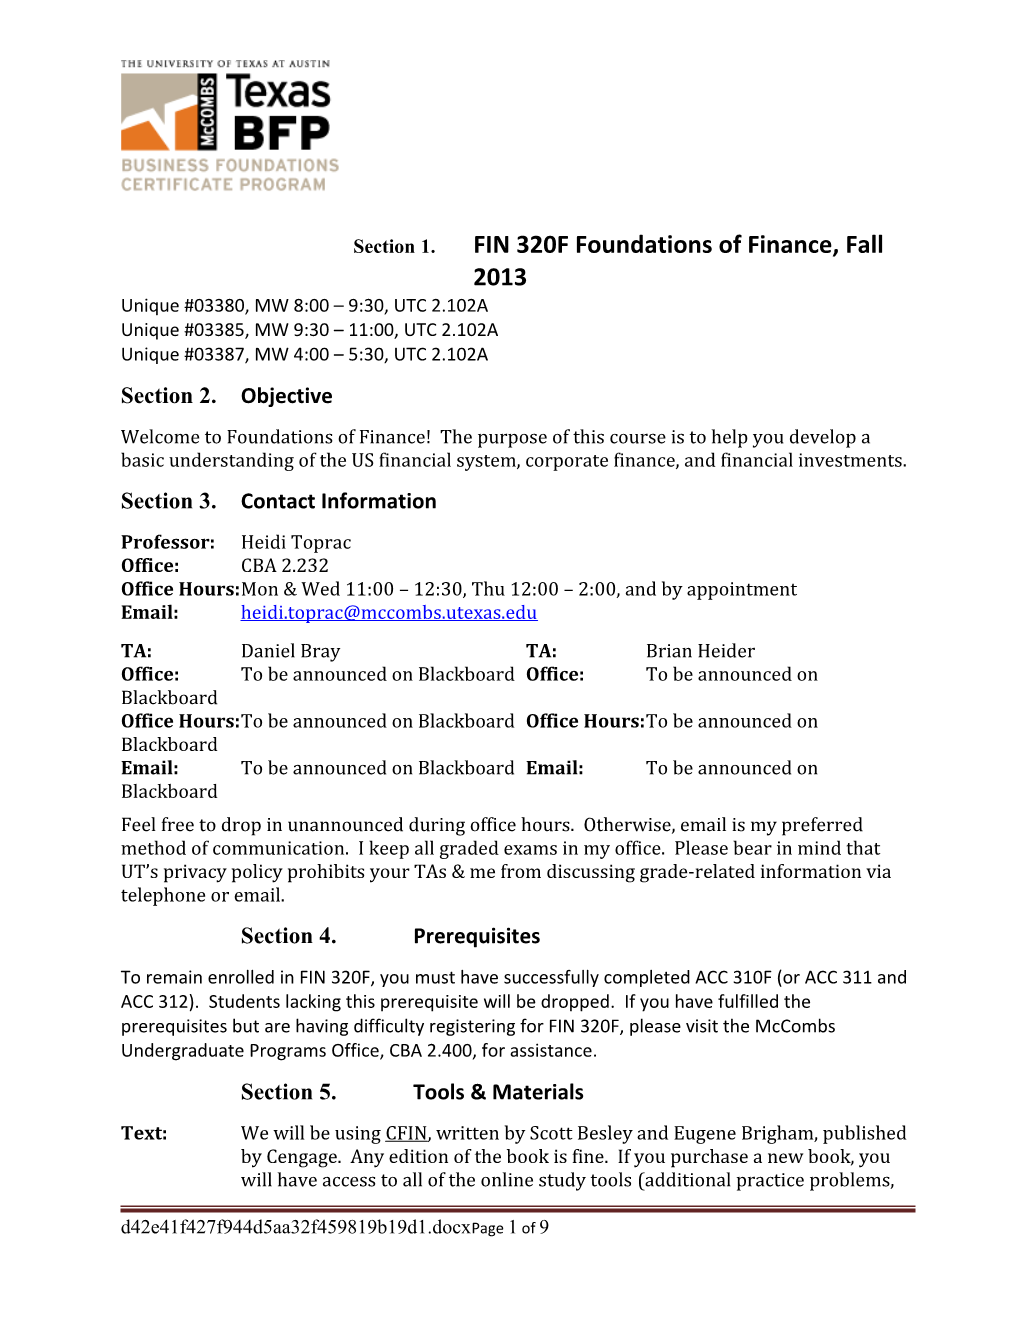 FIN 320F Foundations of Financefall 2013 Syllabus